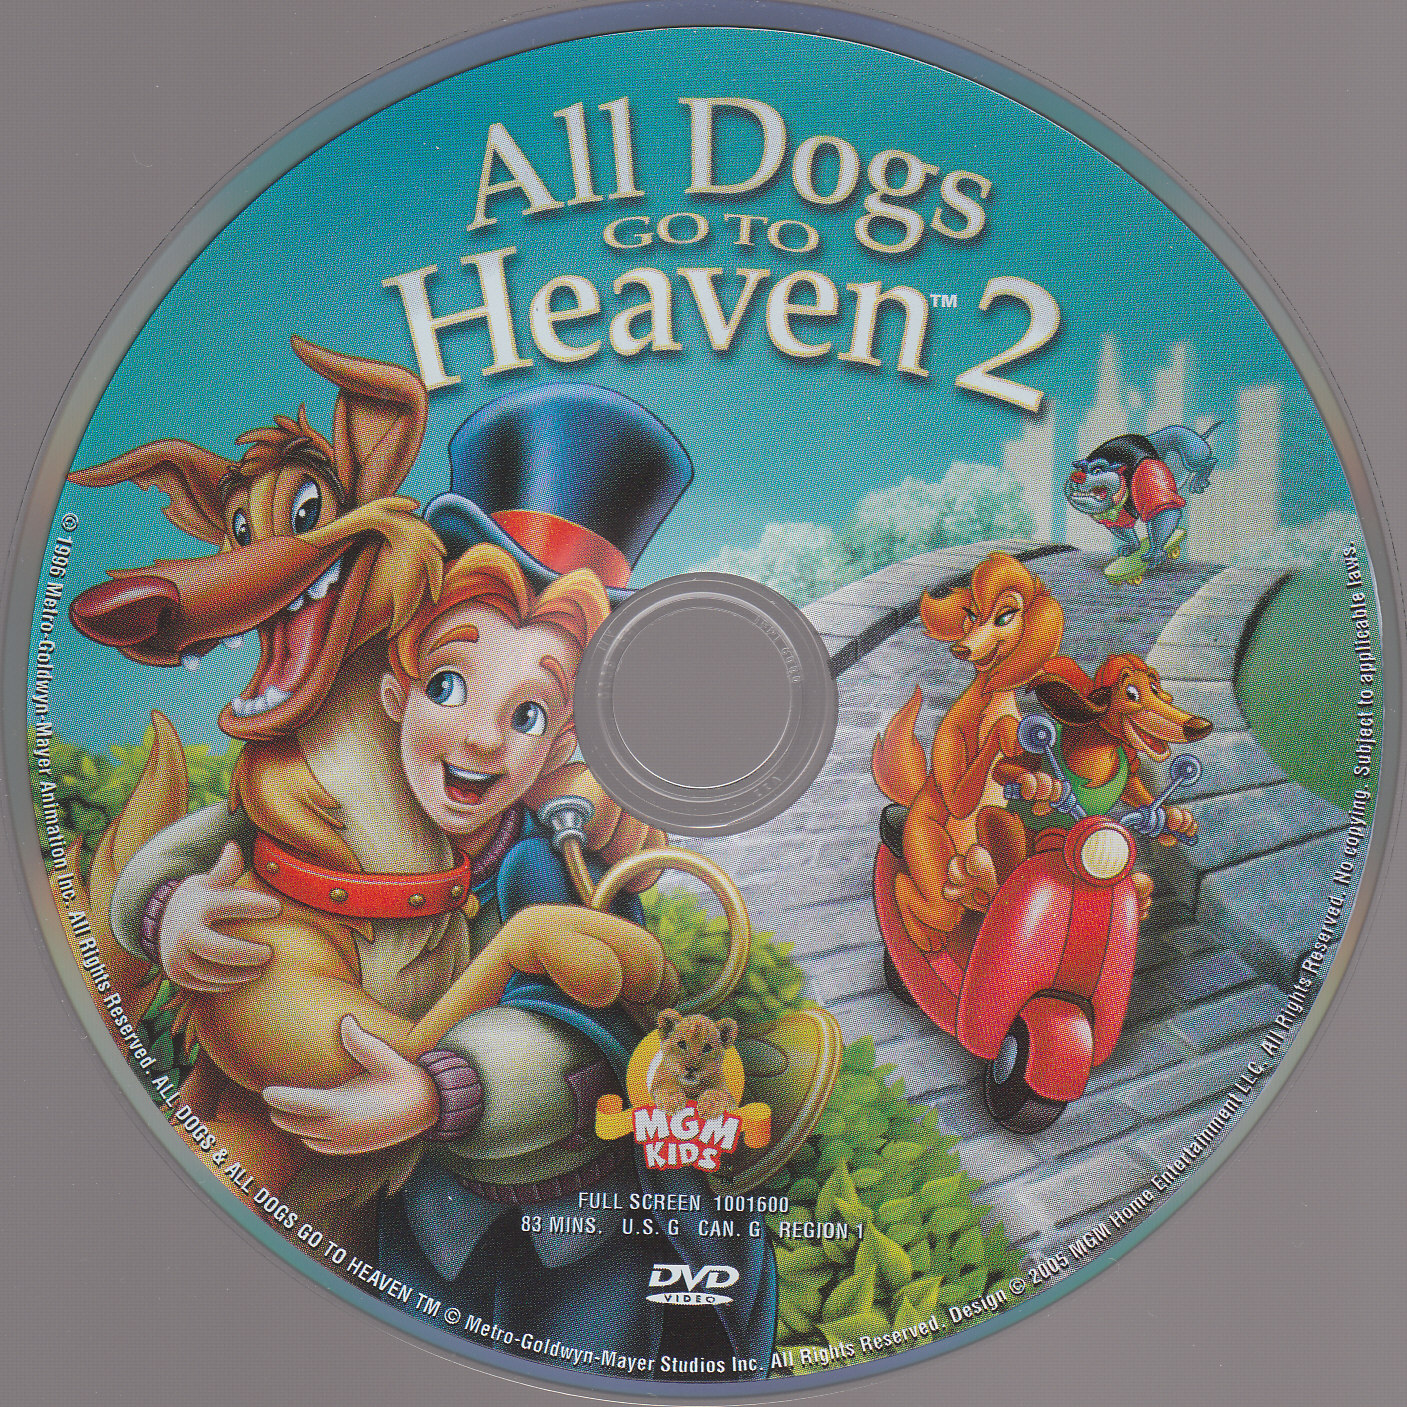 All dogs go to heaven 2 - Tous les chiens vont au paradis 2 (Canadienne)